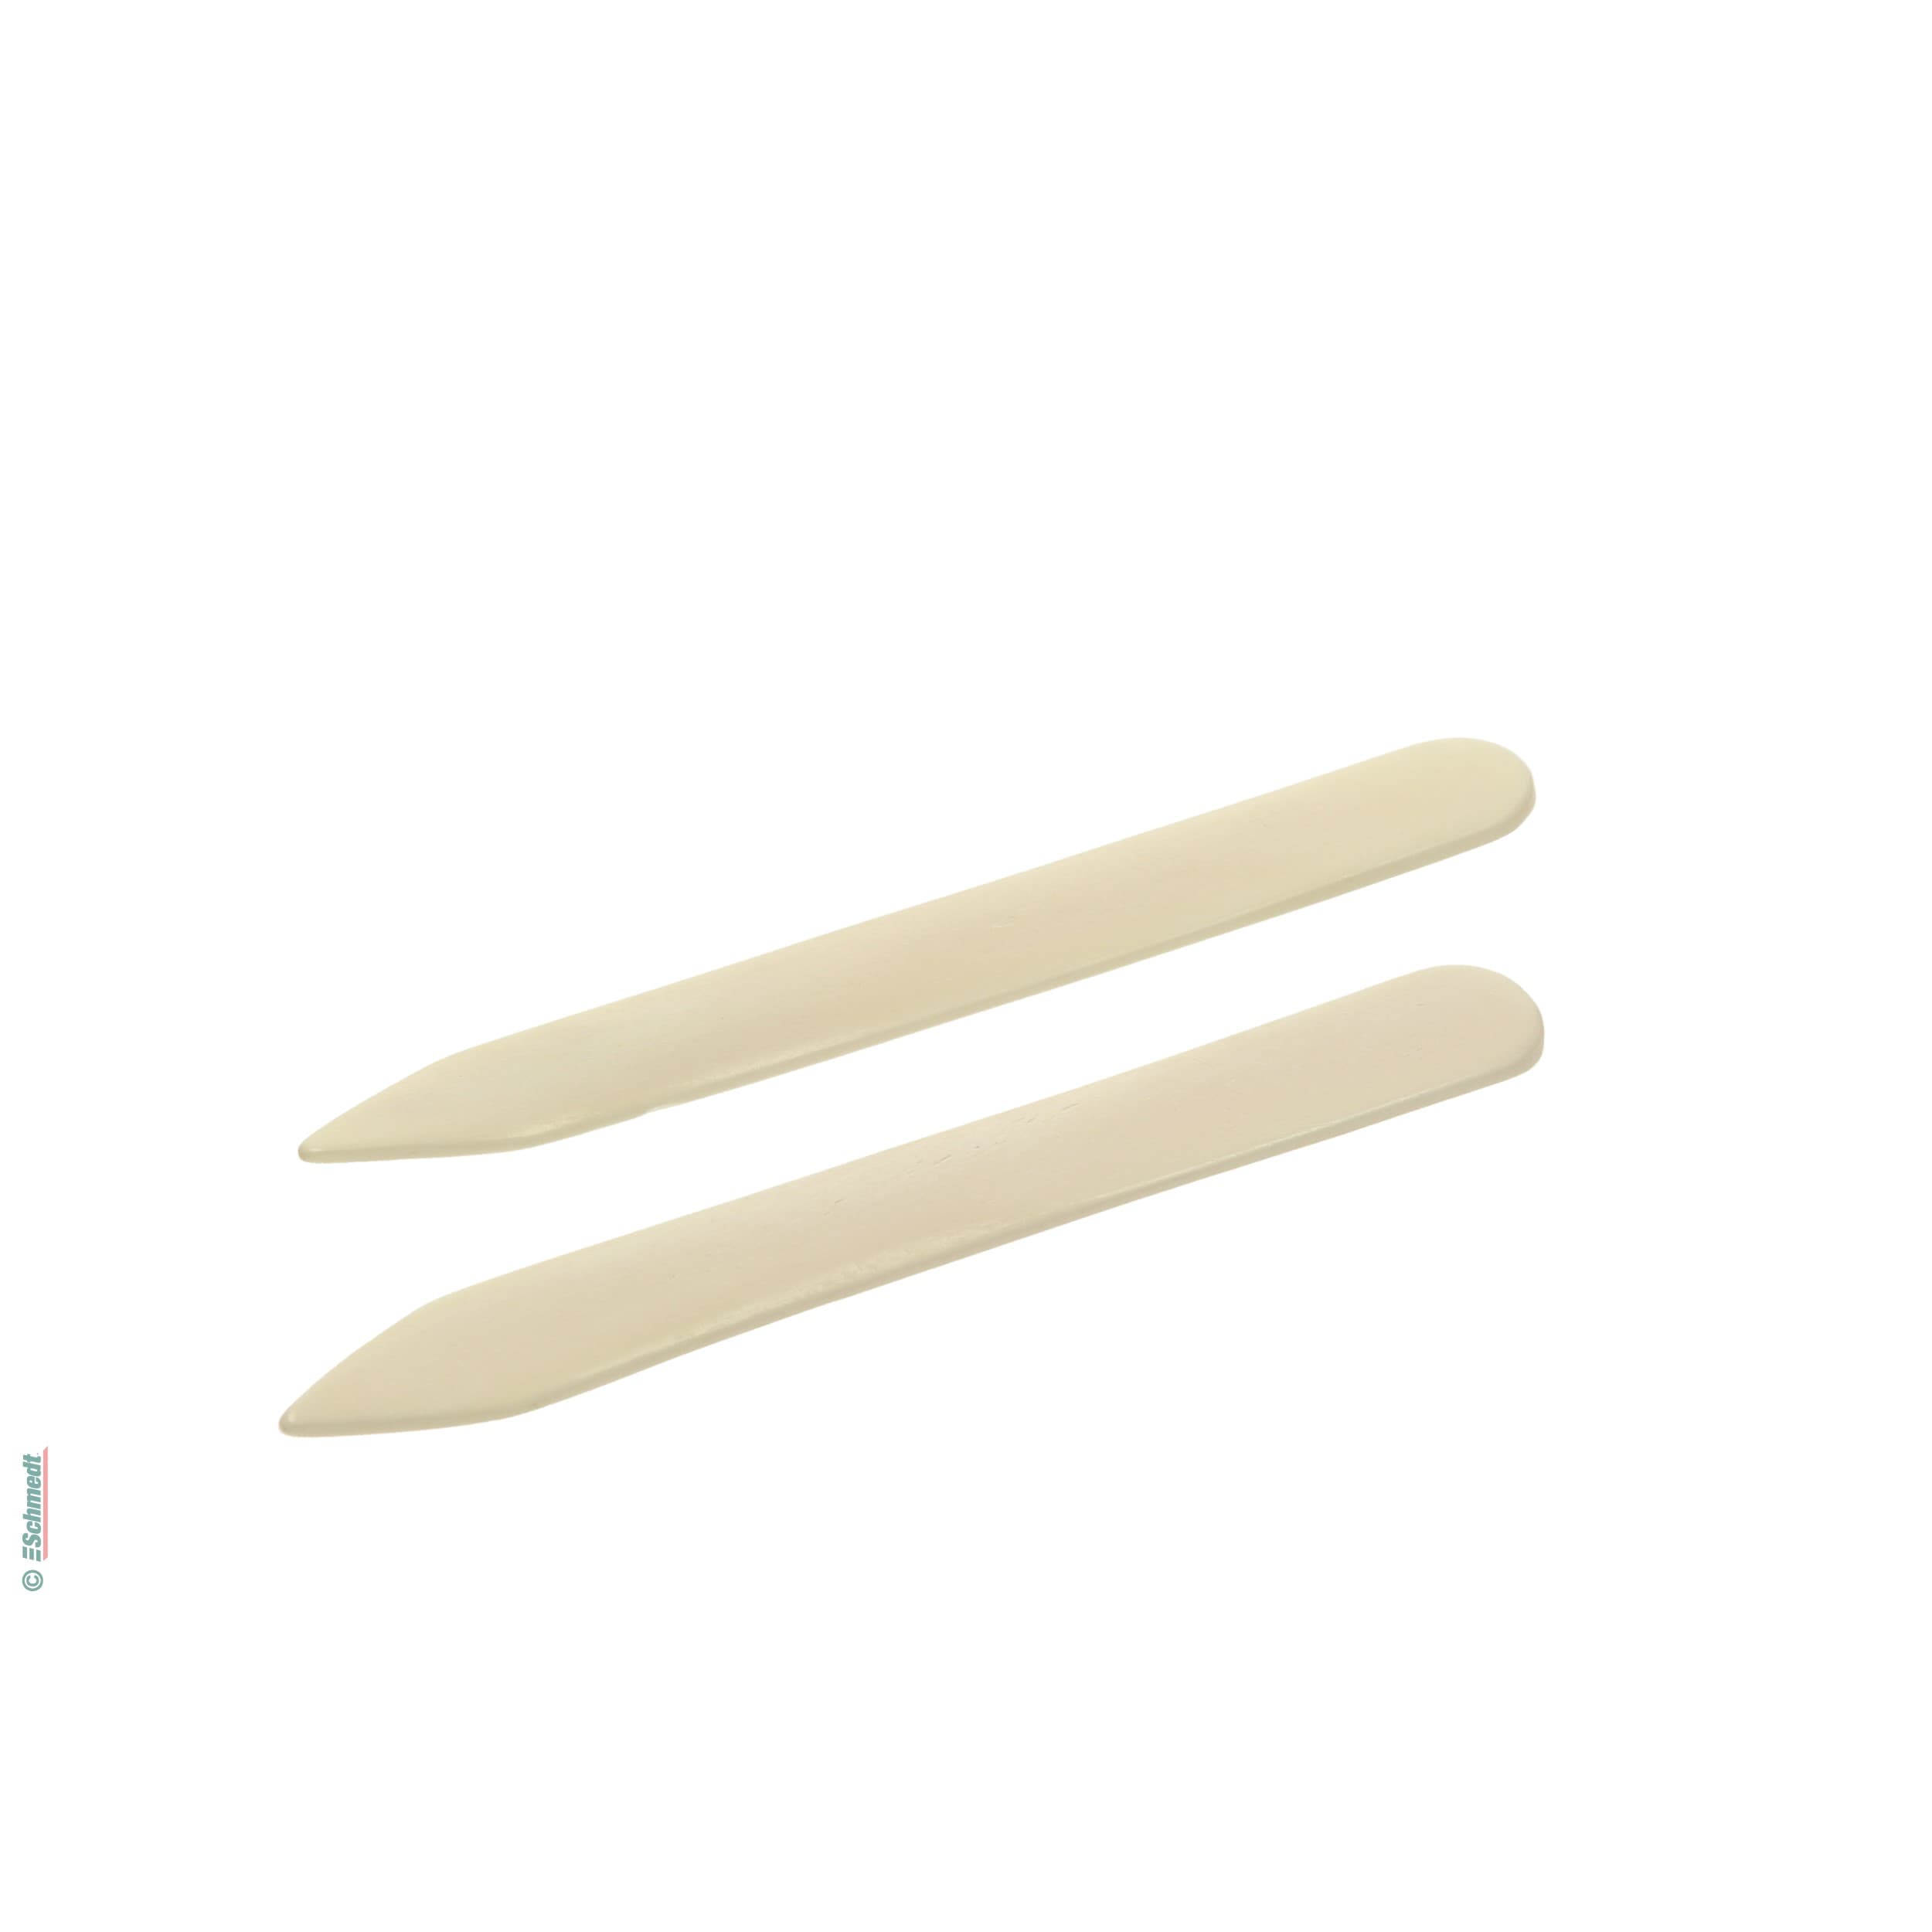 Falzbein aus Knochen, spitz - Gesamtlänge (in mm) 160 - unverzichtbares Werkzeug für Buchbinder und Restauratoren zur Herstellung starker, s...